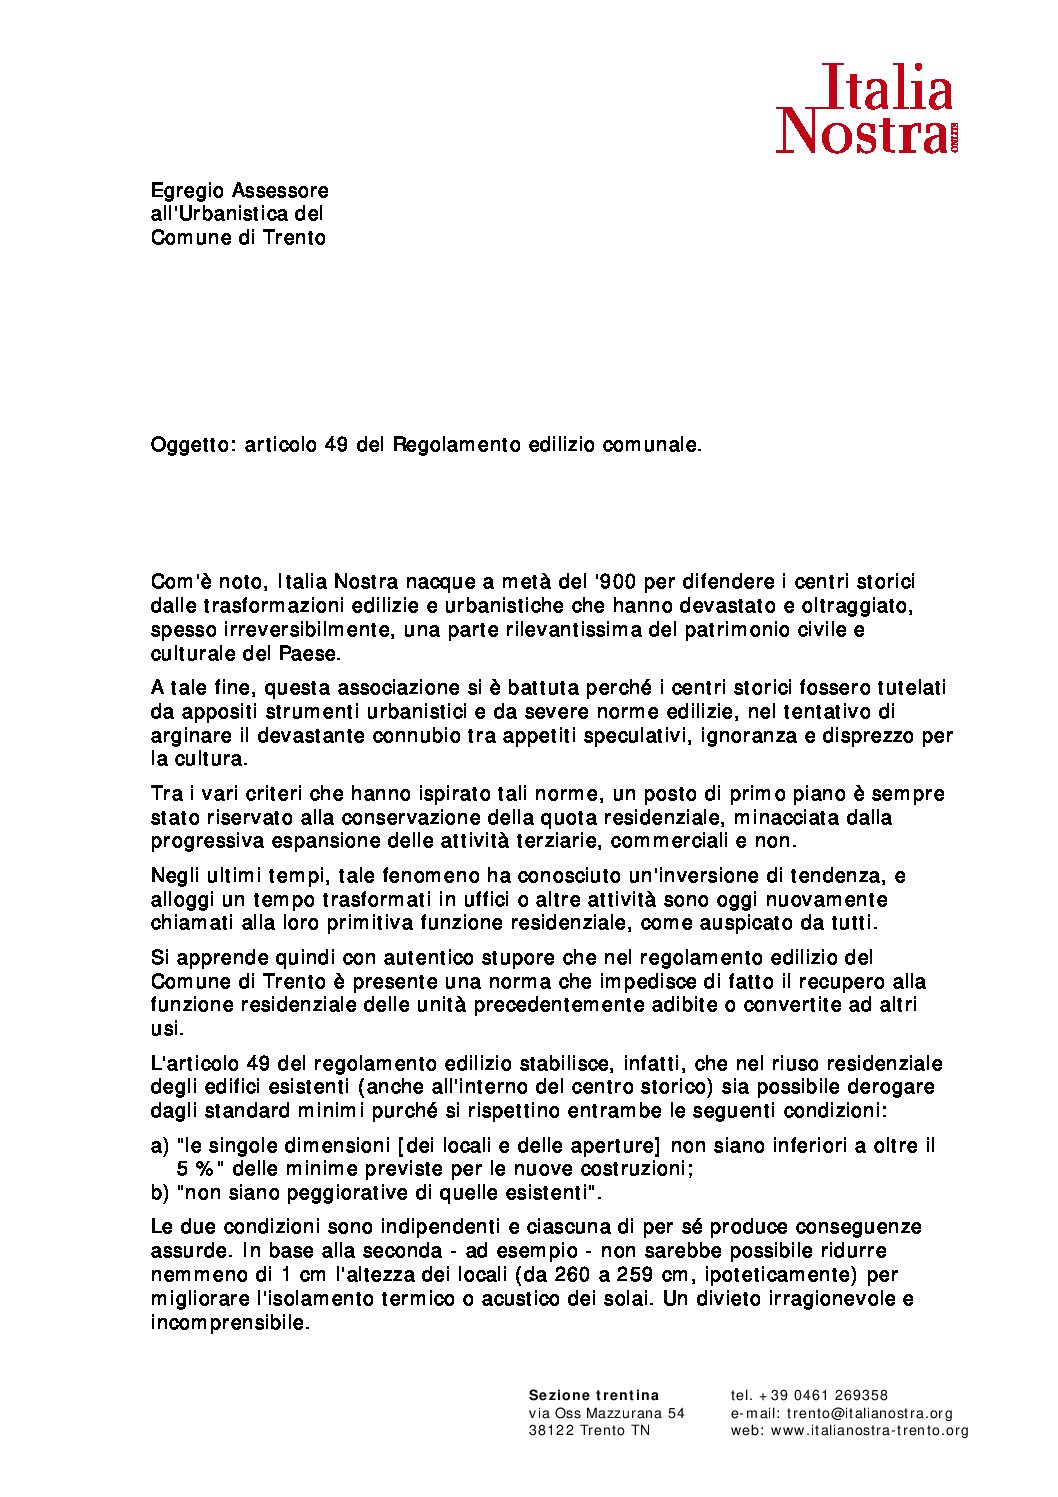 Lettera Italia Nostra a Vicesindaco Comune Trento su regolamento edilizio